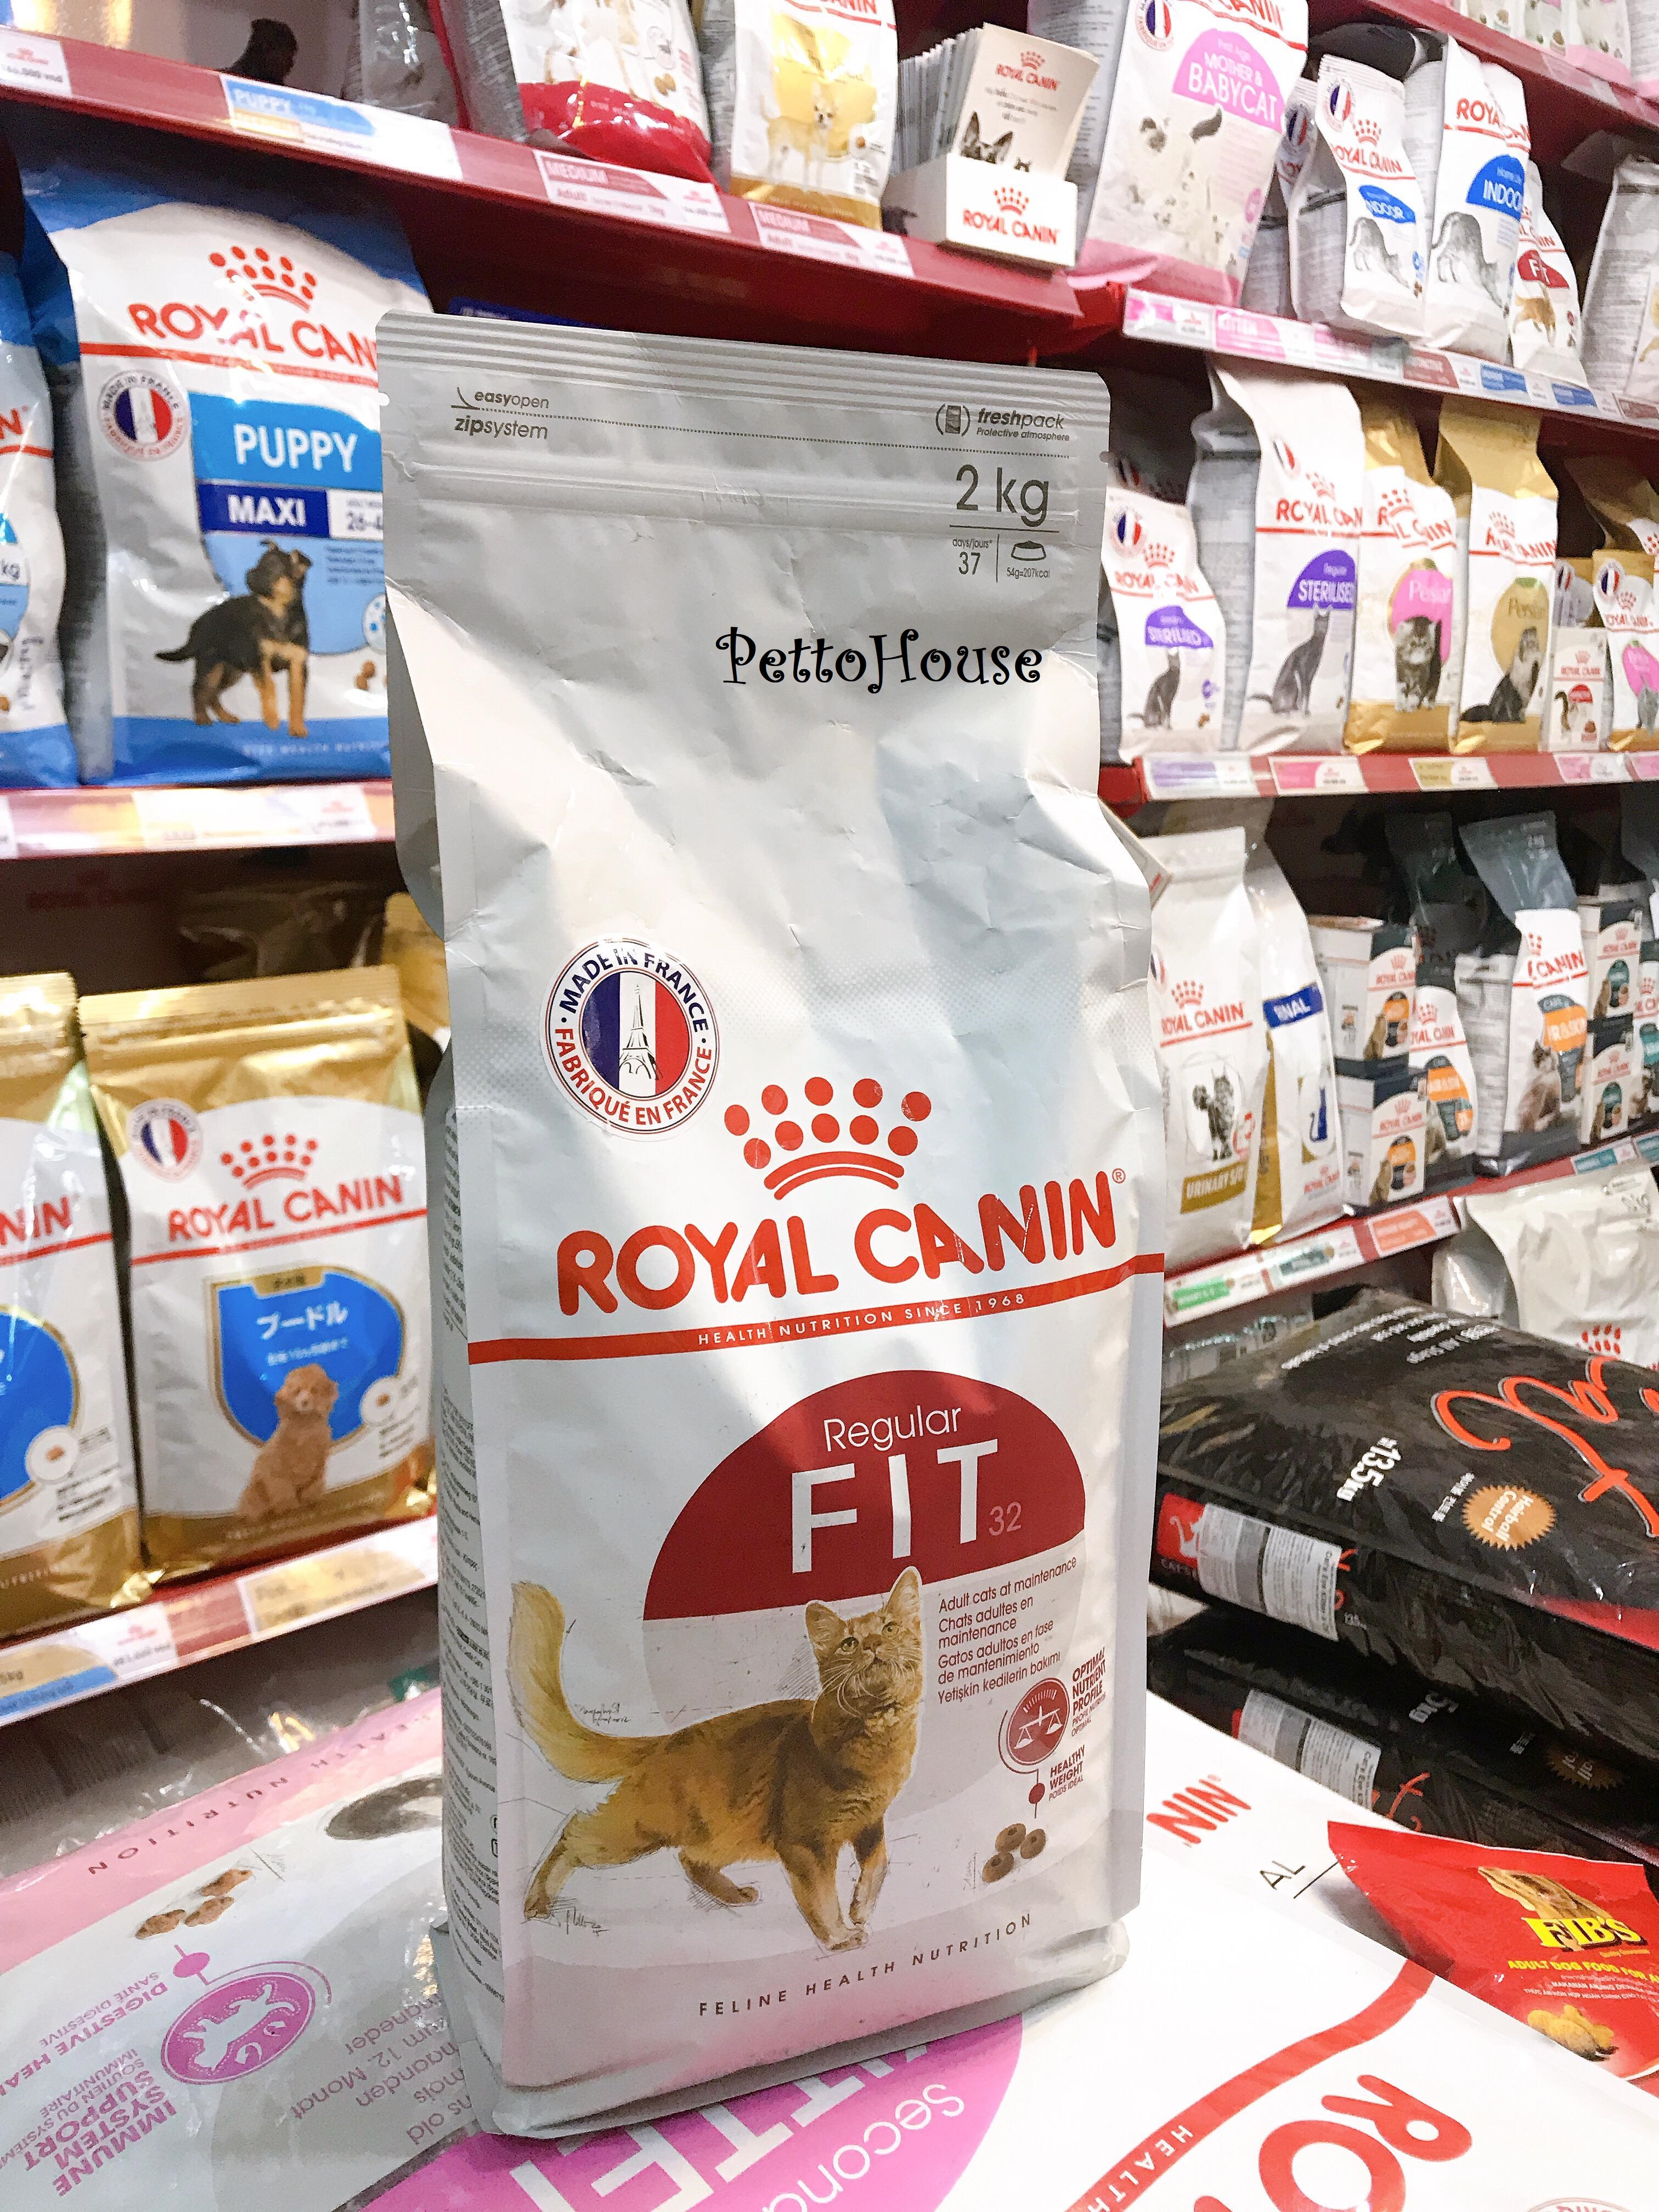 Gói zip chiết lẻ hạt khô thức ăn cho mèo trưởng thành trên 12 tháng tuổi Royal Canin Fit32 1kg sản xuất tại pháp